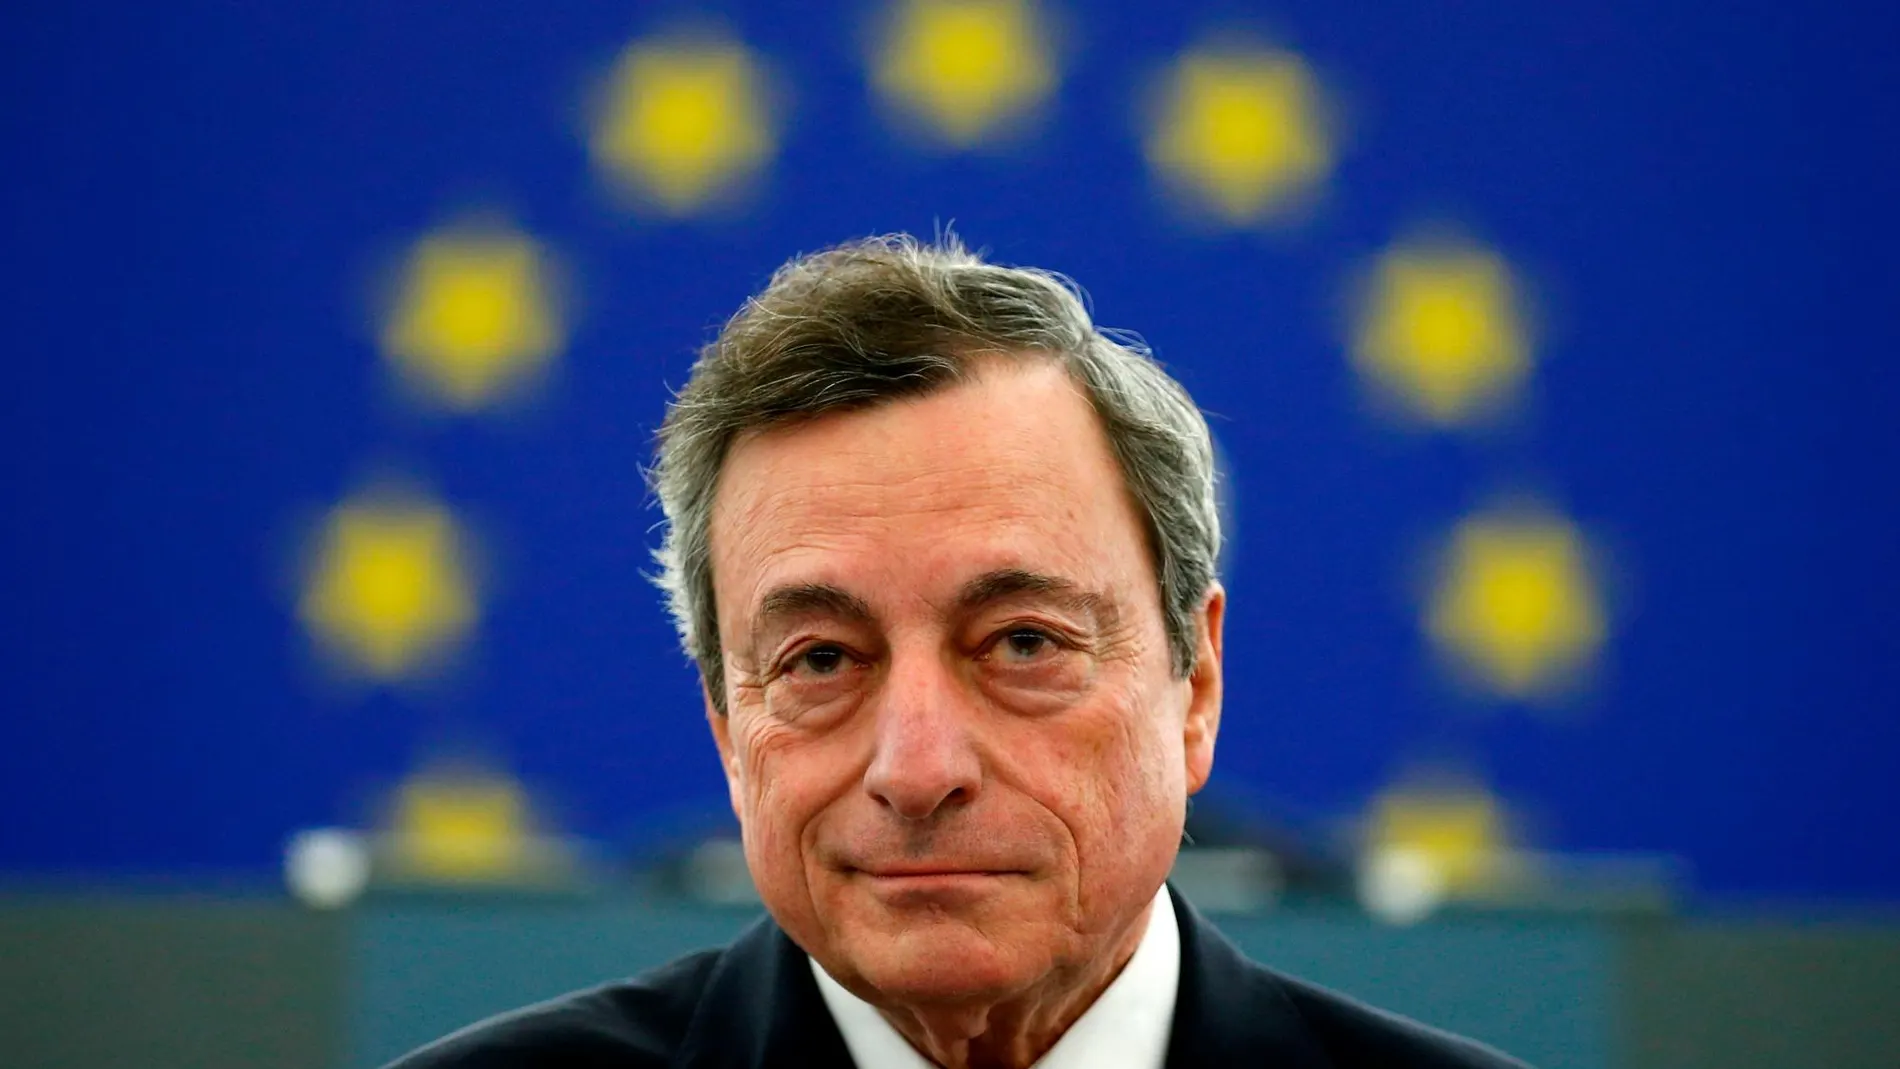 El presidente del BCE, Mario Draghi / Foto: Reuters